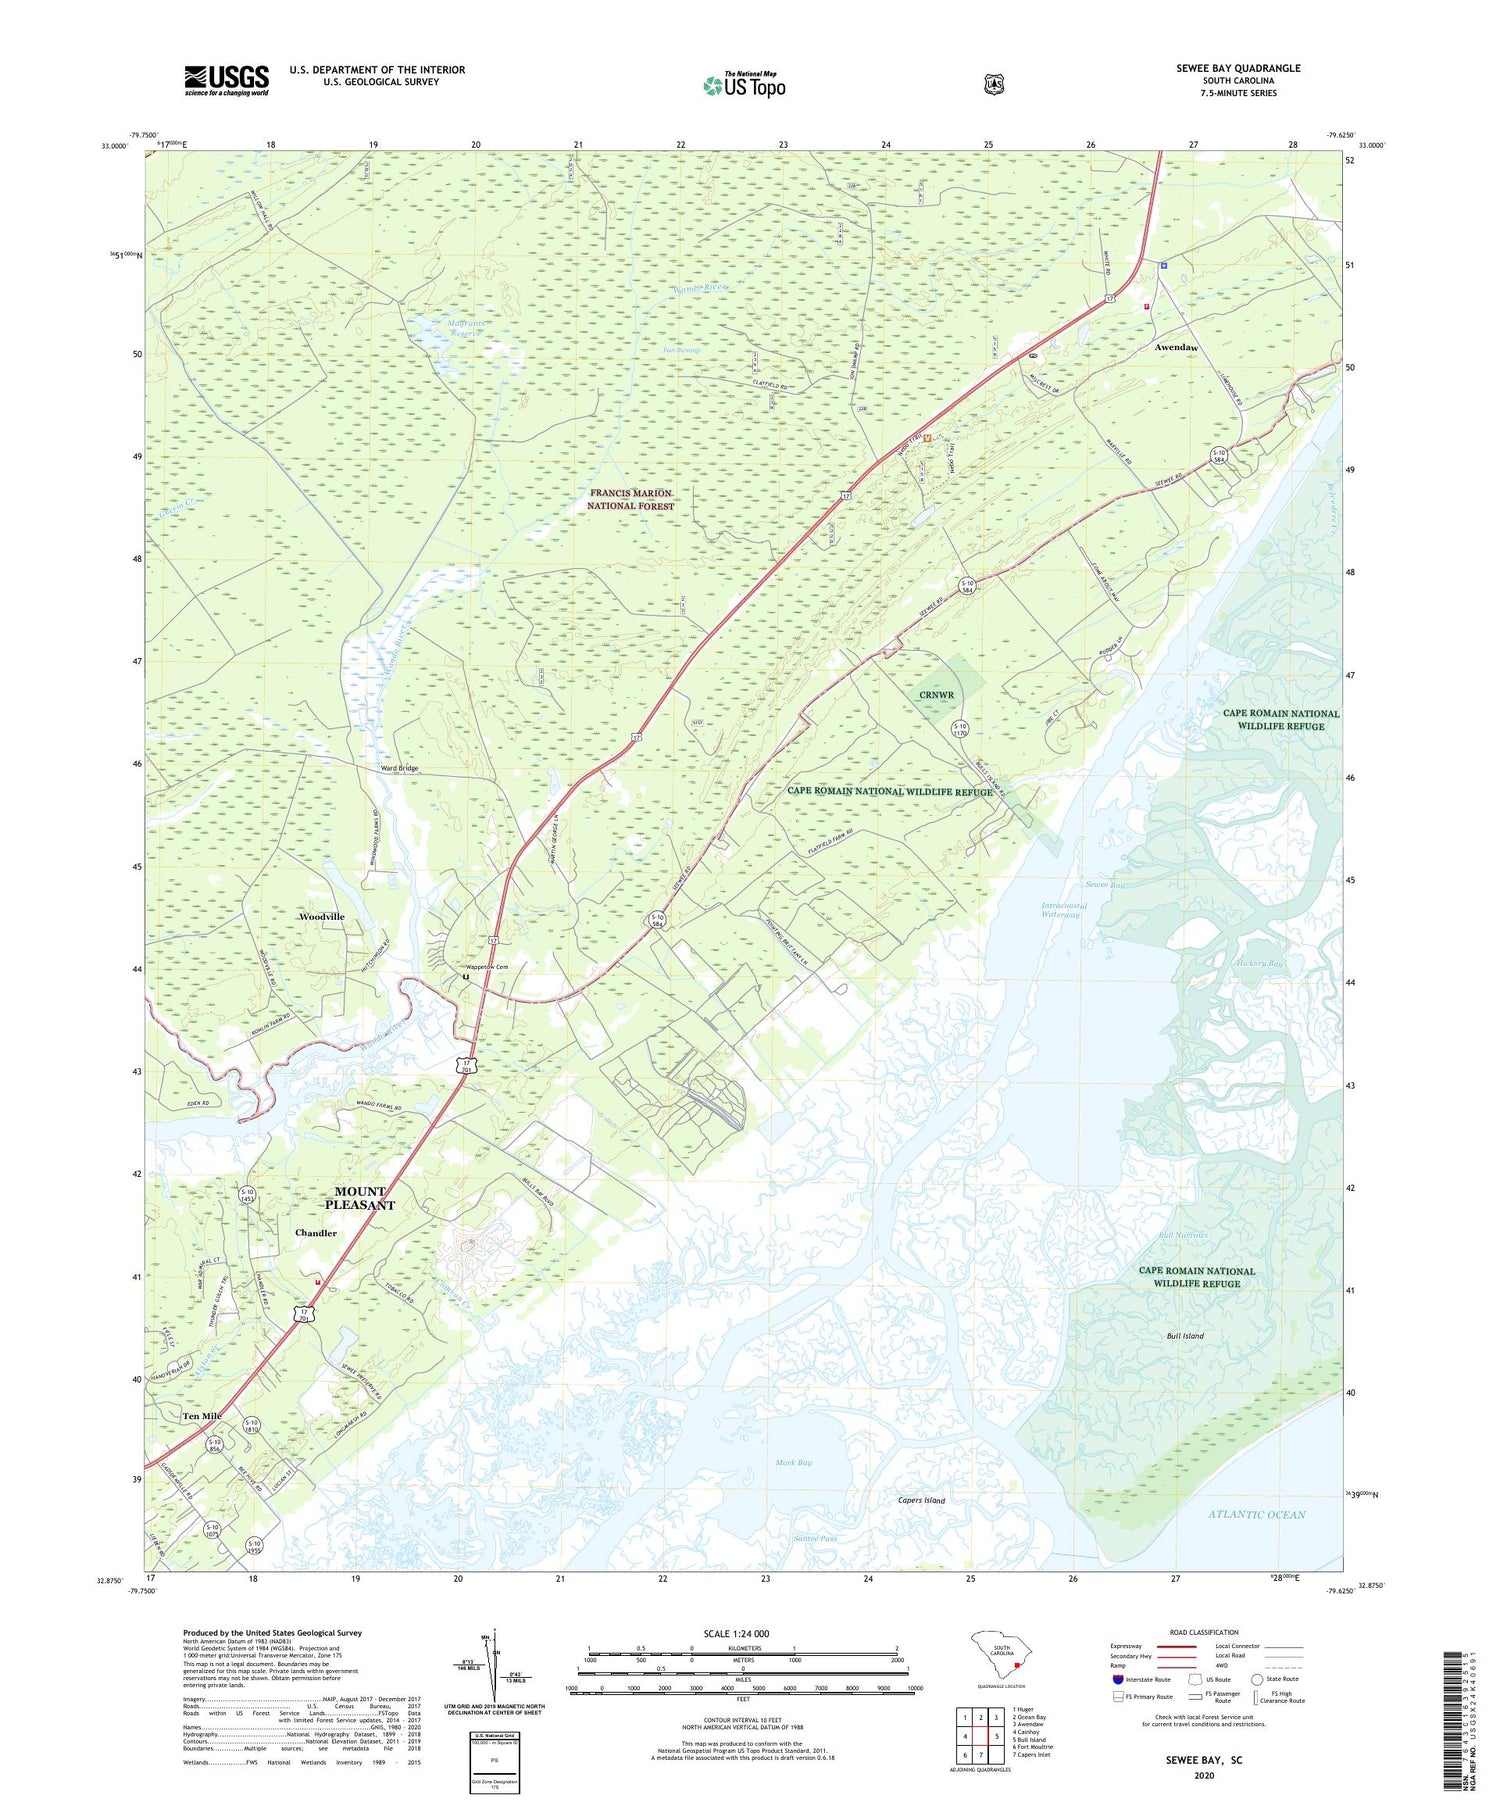 Sewee Bay South Carolina US Topo Map Image